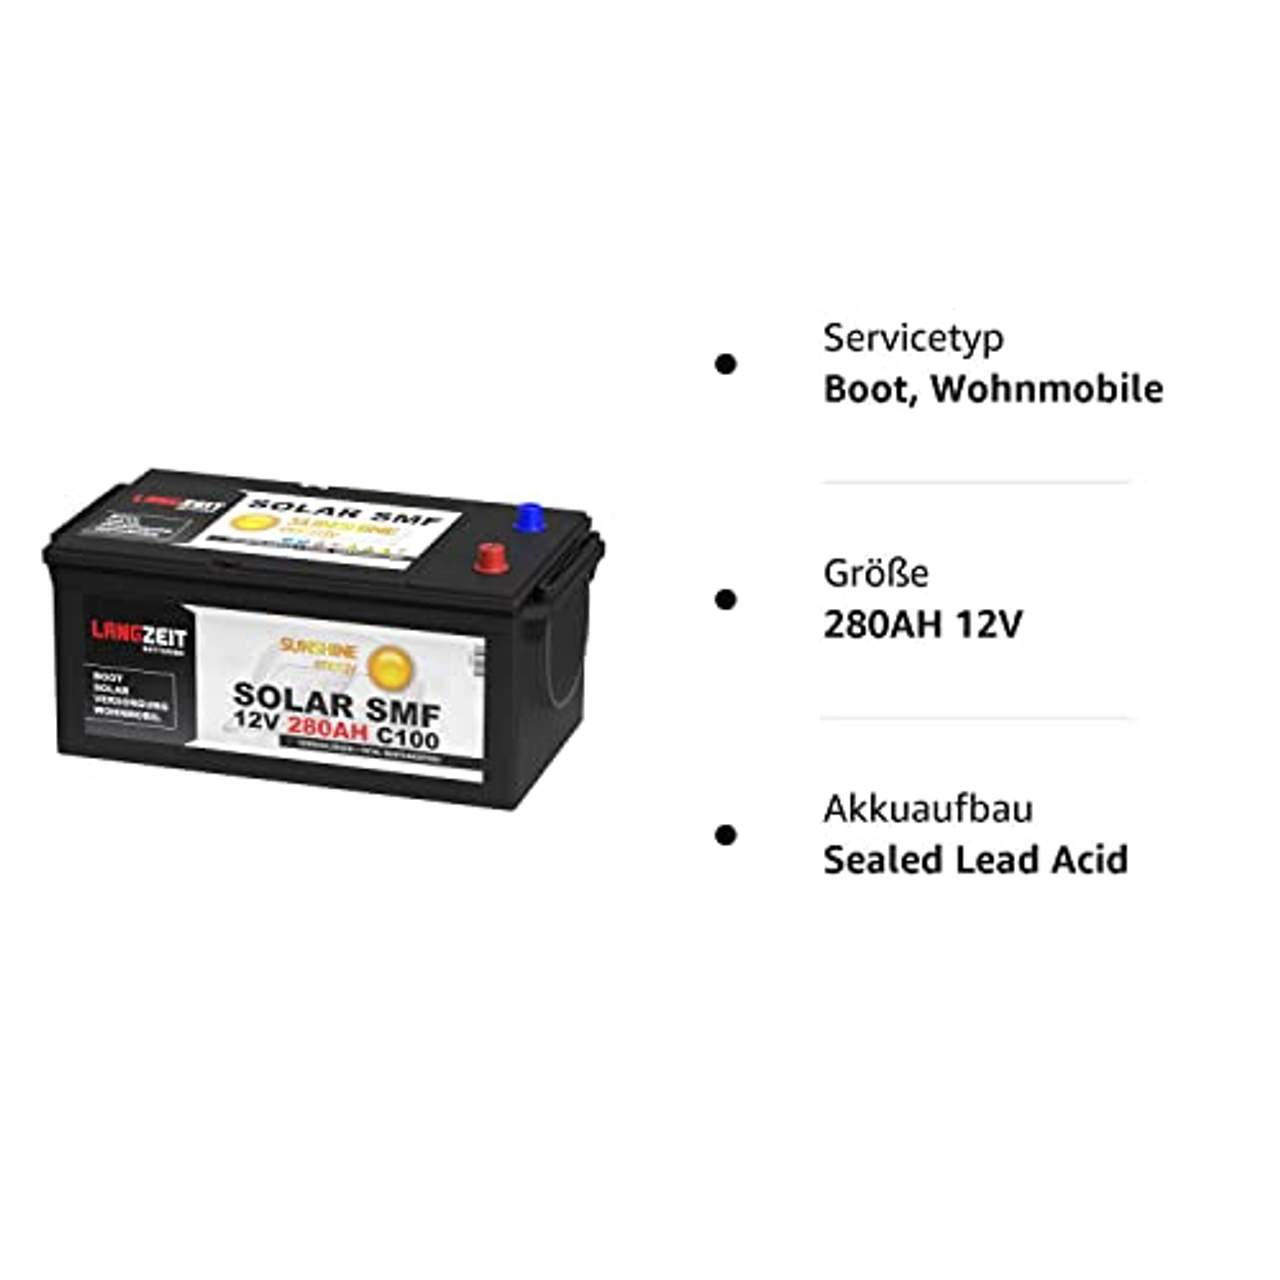 Solarbatterie 280Ah 12V Versorgungsbatterie Wohnmobil Batterie Boot